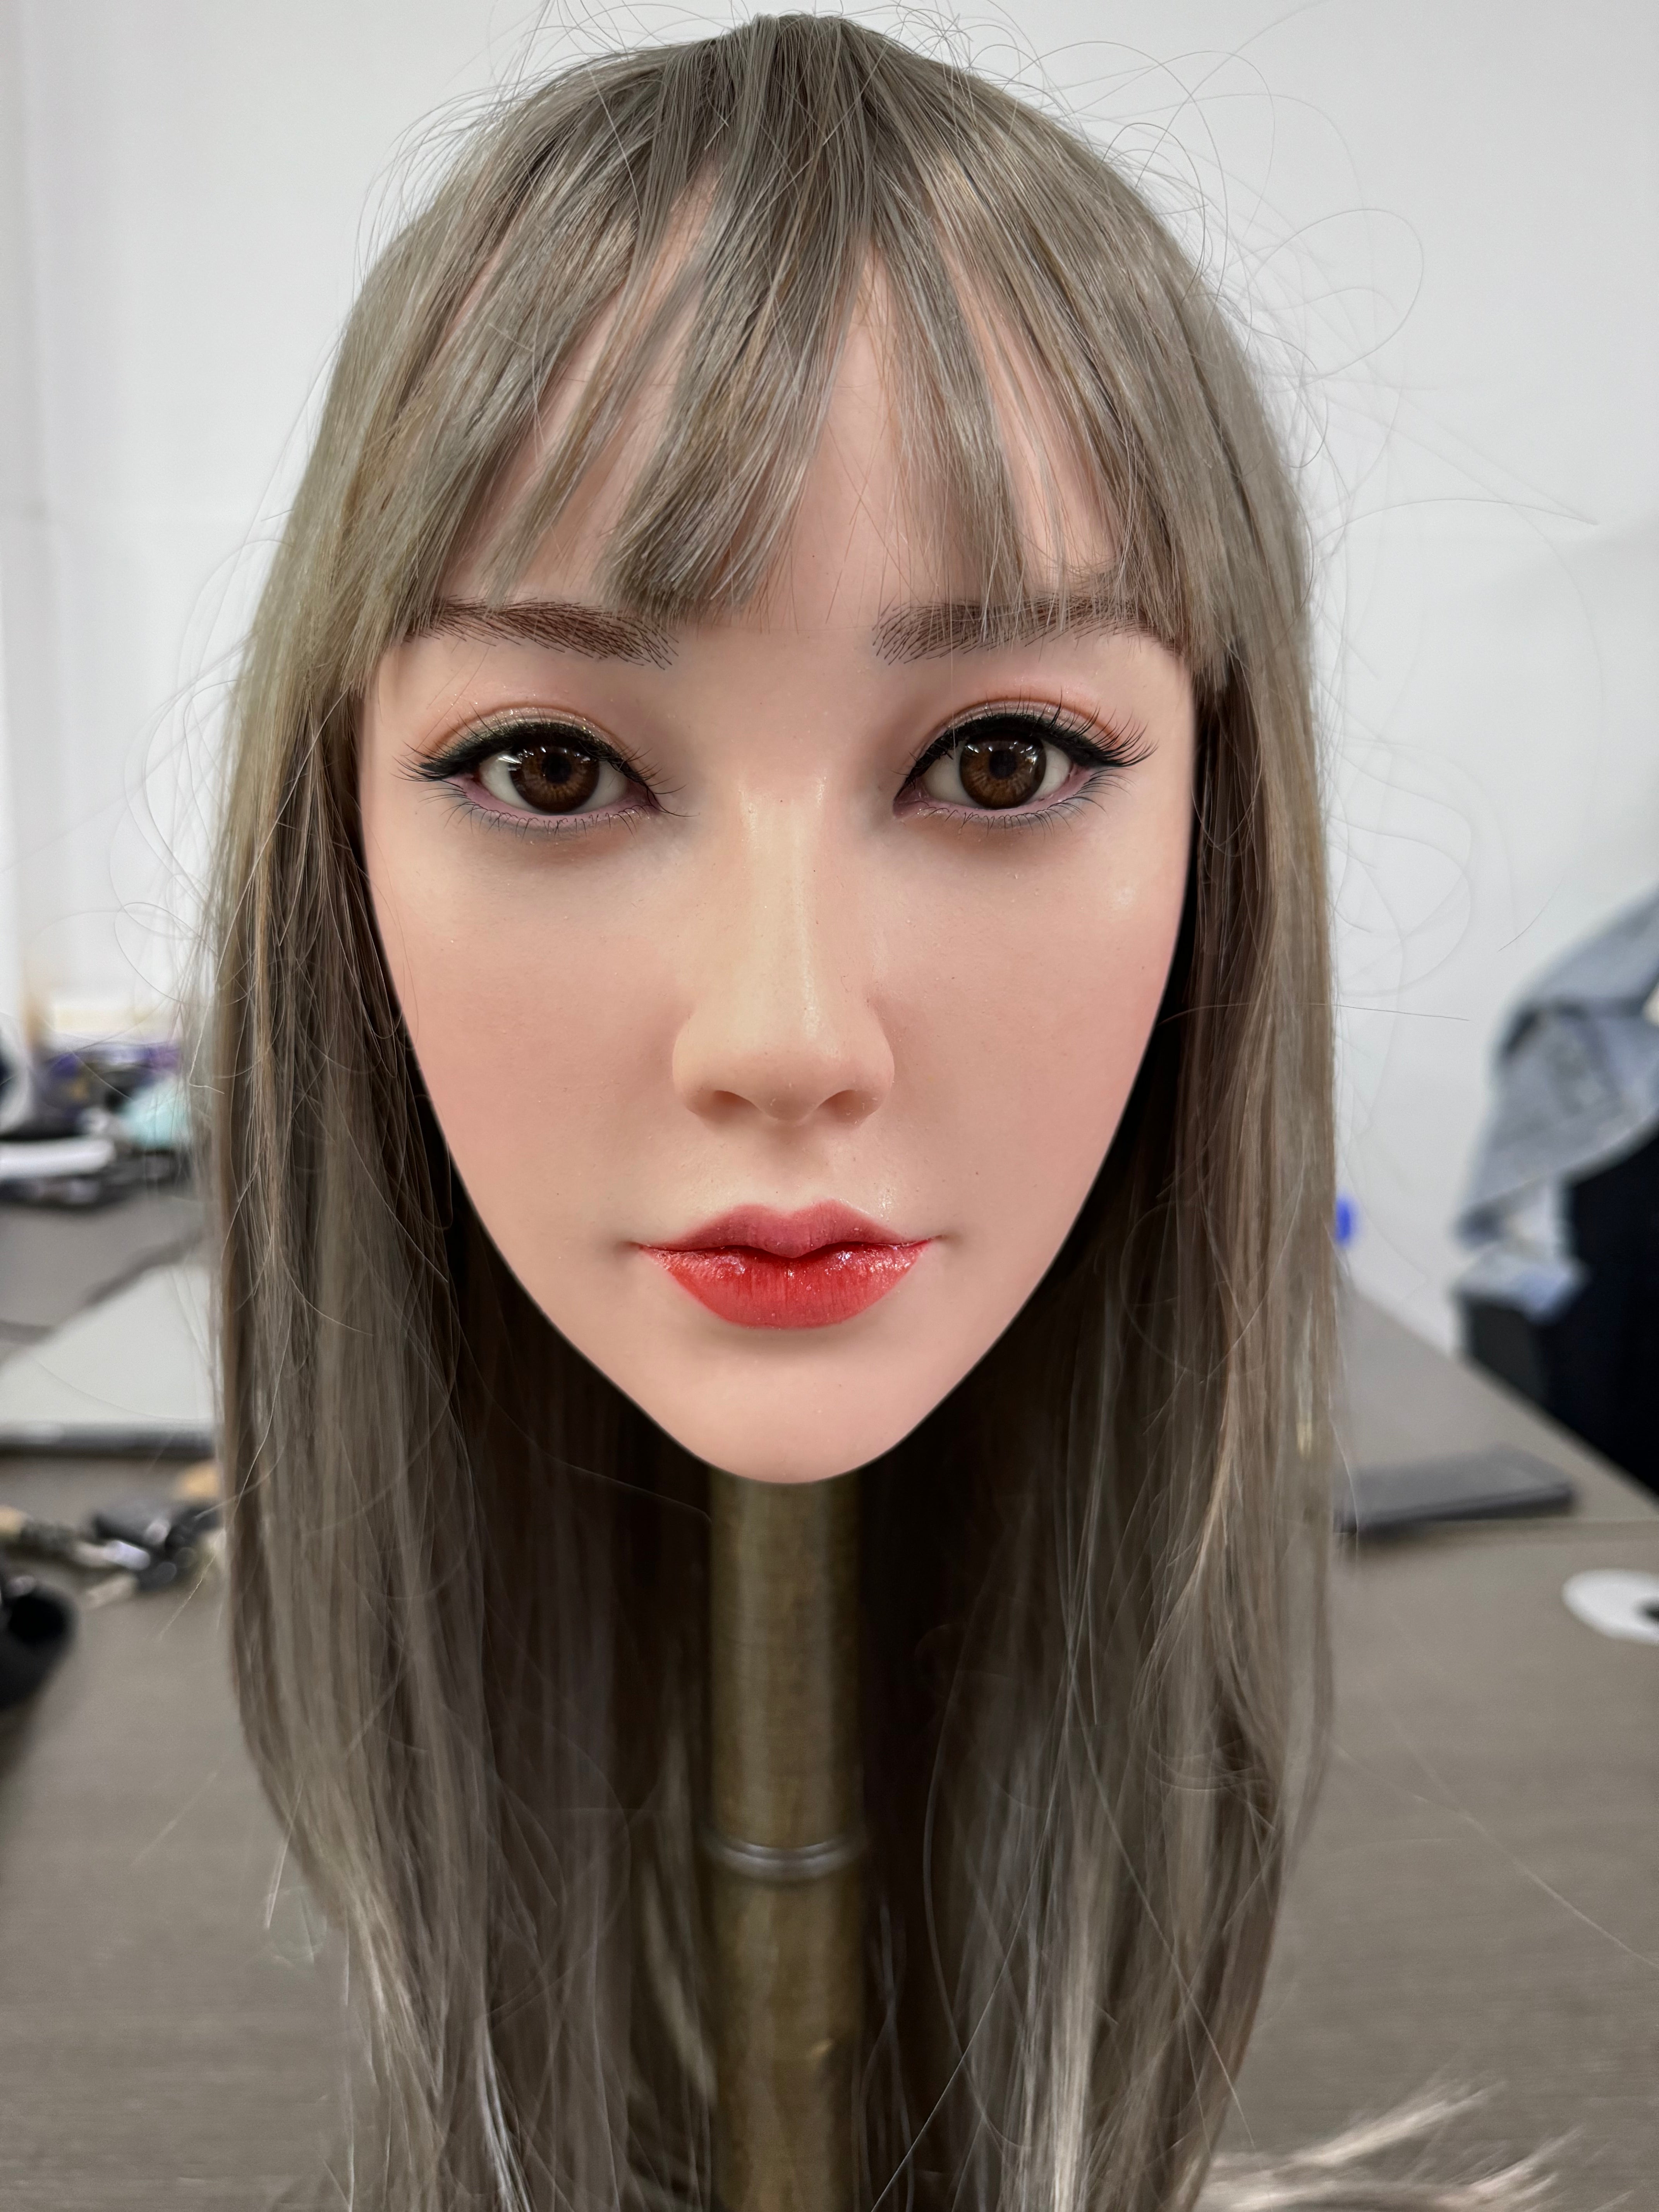 Fanreal Doll Head - Weiwei